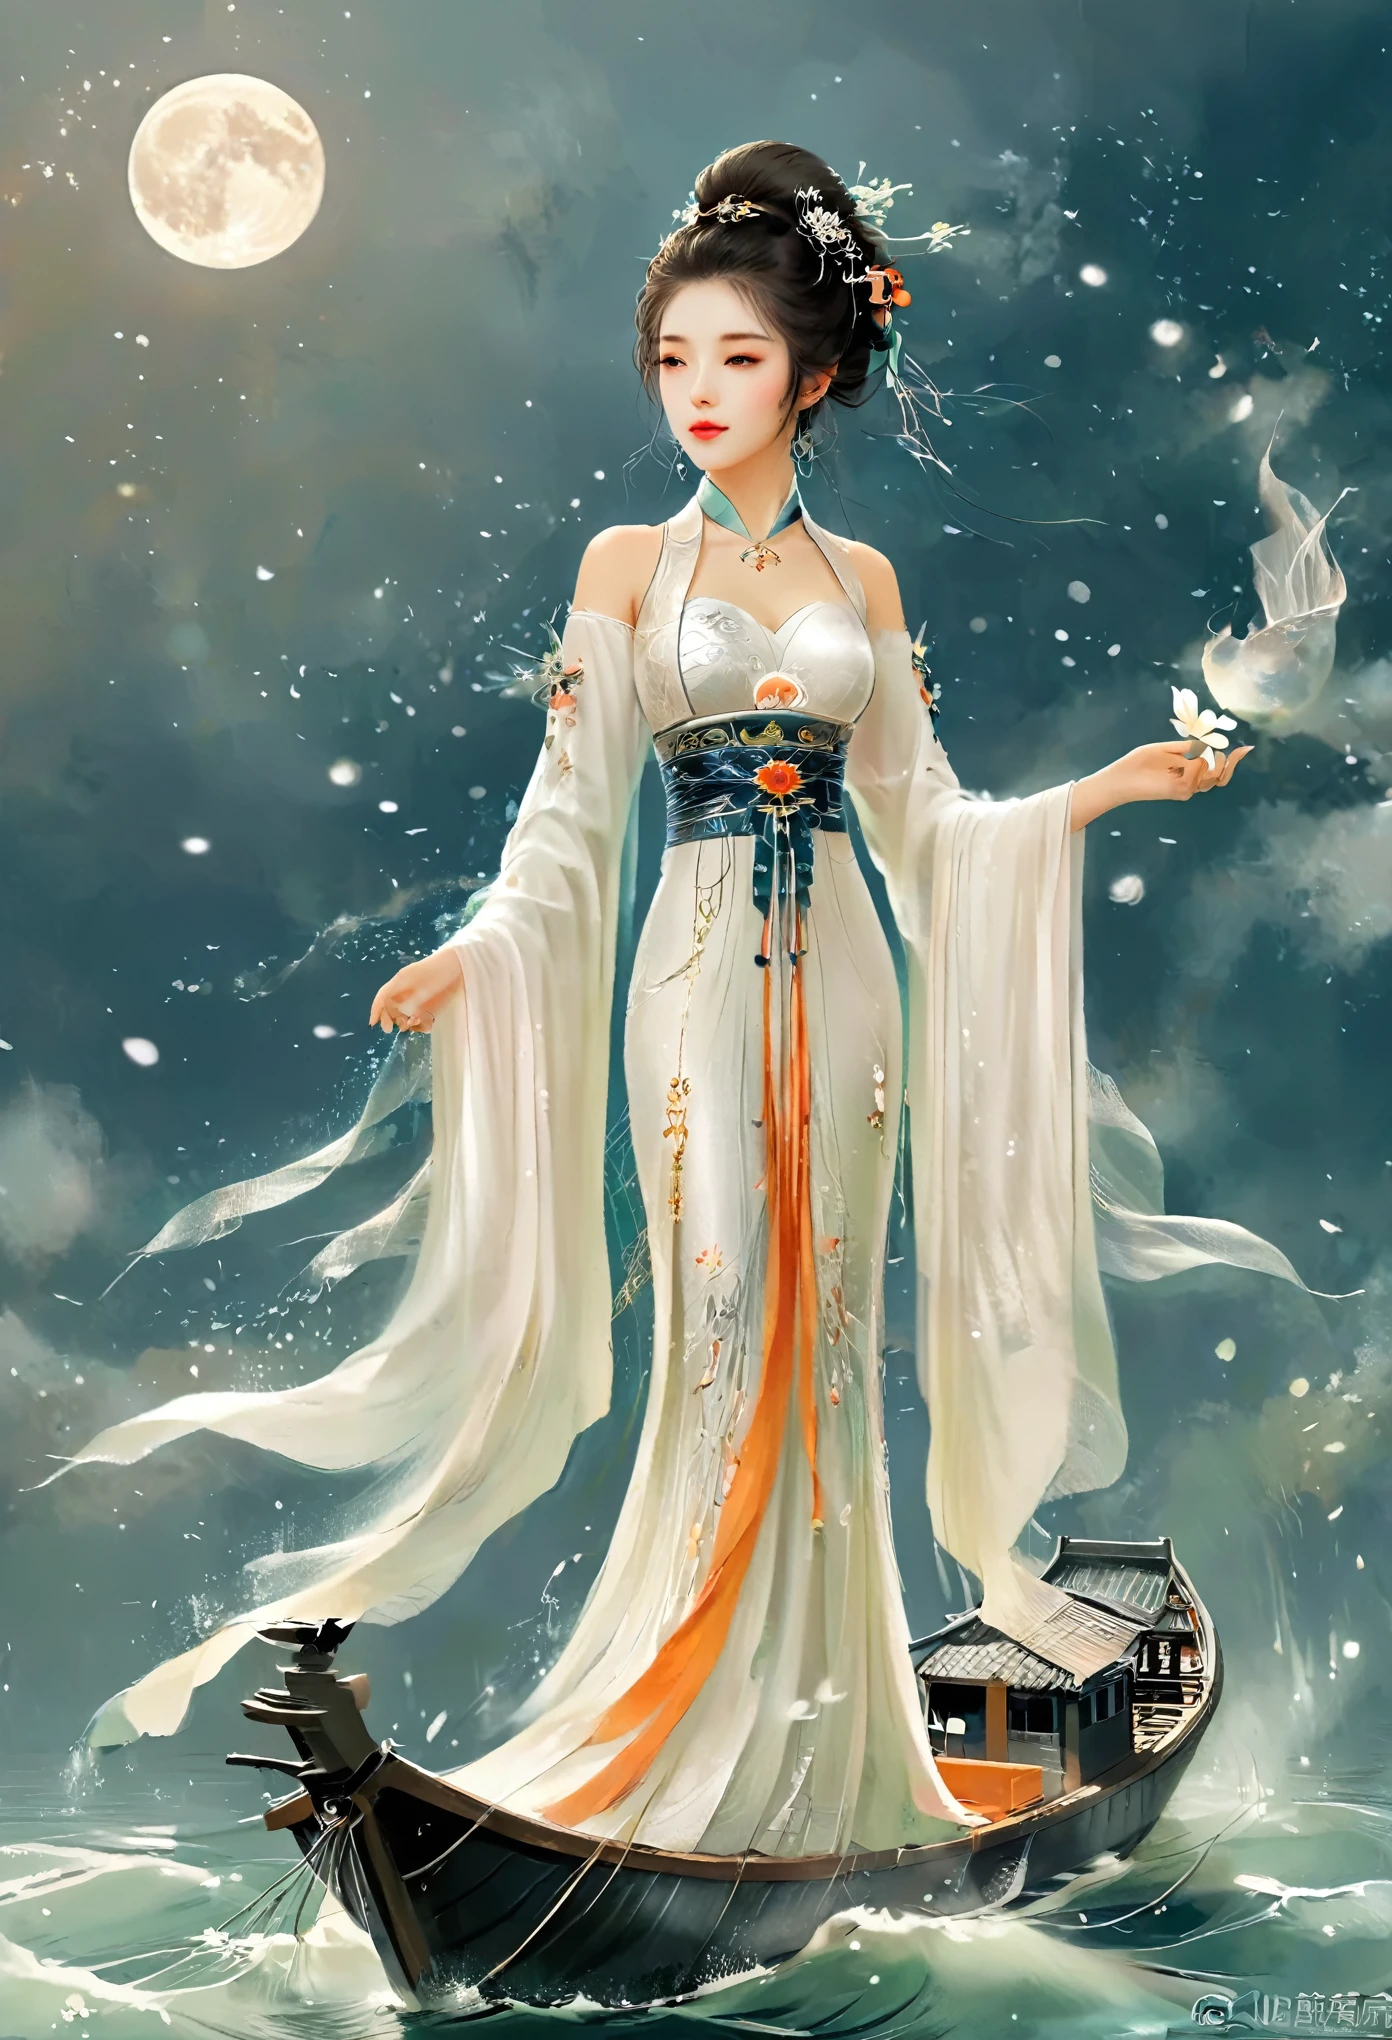 Garota anime em um vestido branco flutuando em um barco na água，fantasia，Deusa Lua，linda rainha da fantasia,  por Yang J, Chinese fantasia，garota linda，rainha do mar Mu Yanling，Deusa da Lua Deusa da Lua，Manto Mágico Fluente，Linda fada feiticeira, por Leng Mei, ((uma linda imperatriz de fantasia))